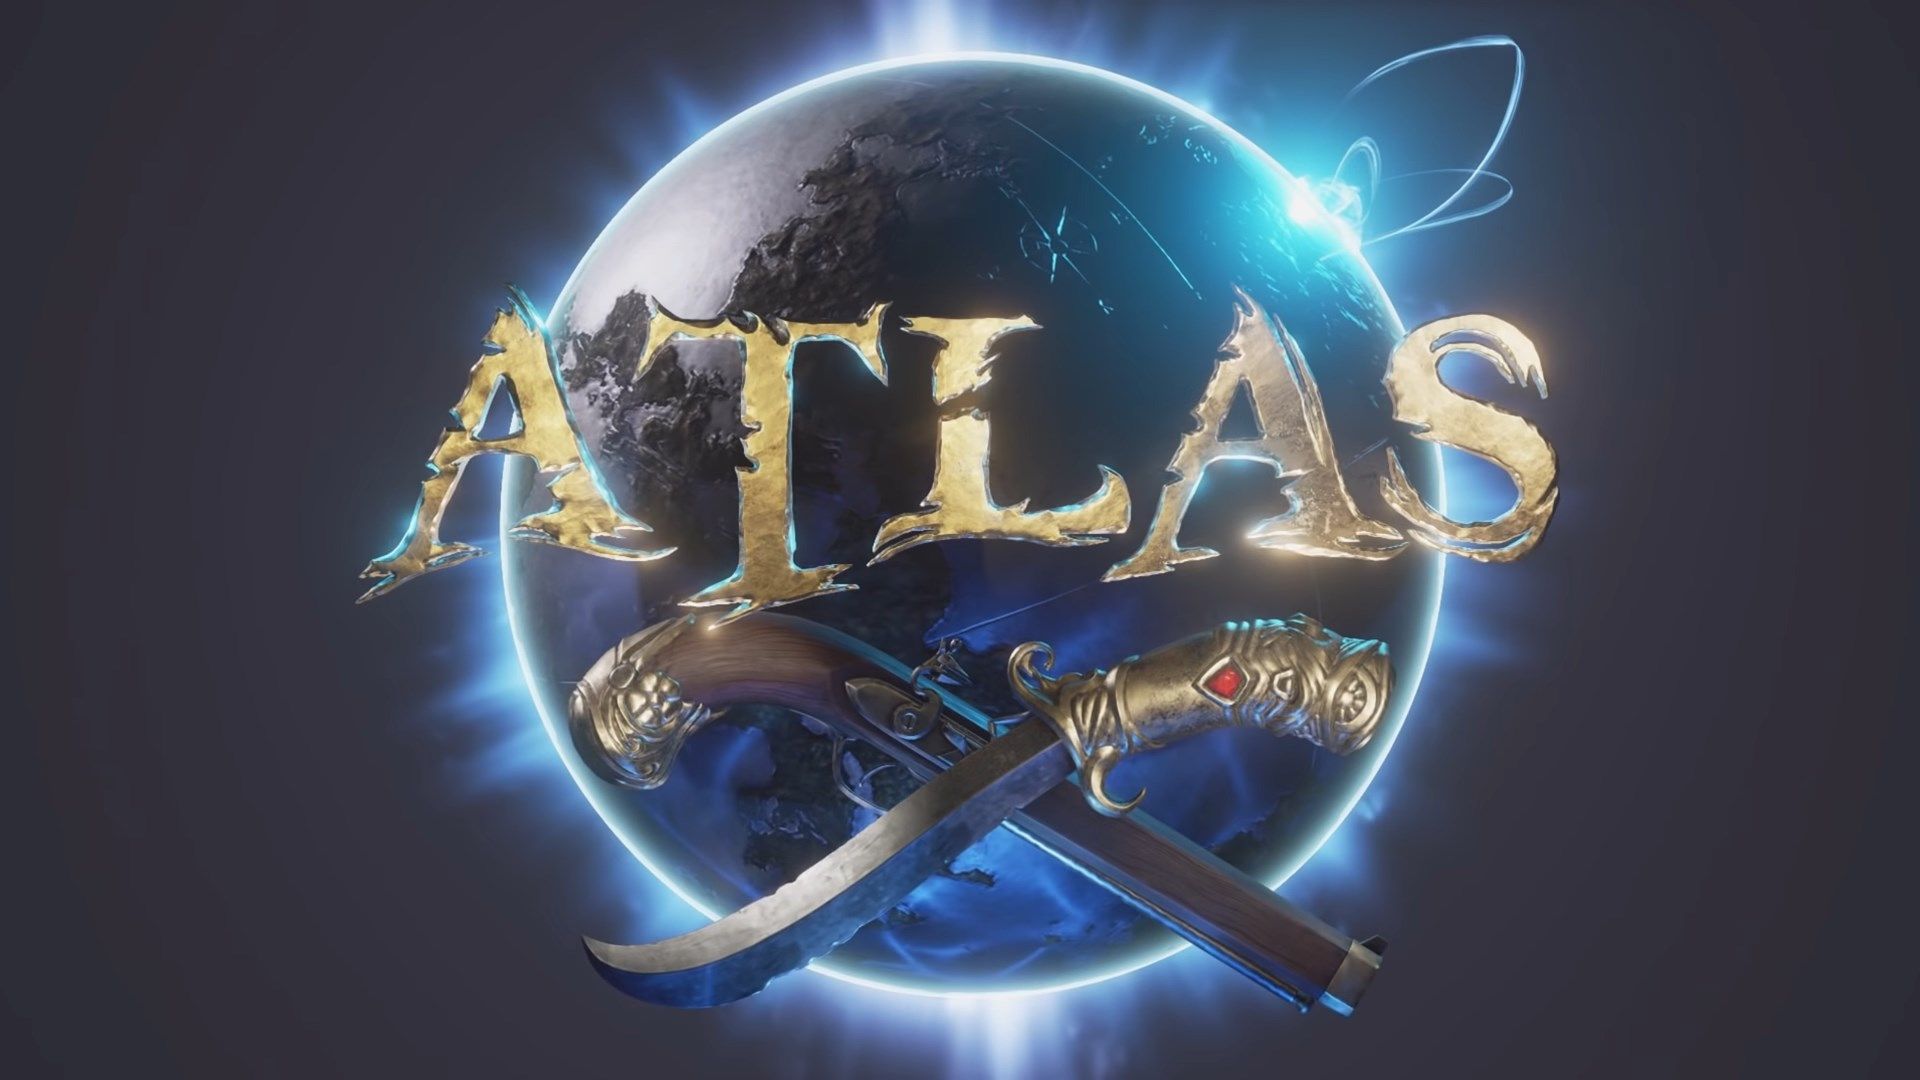 atlas was an os